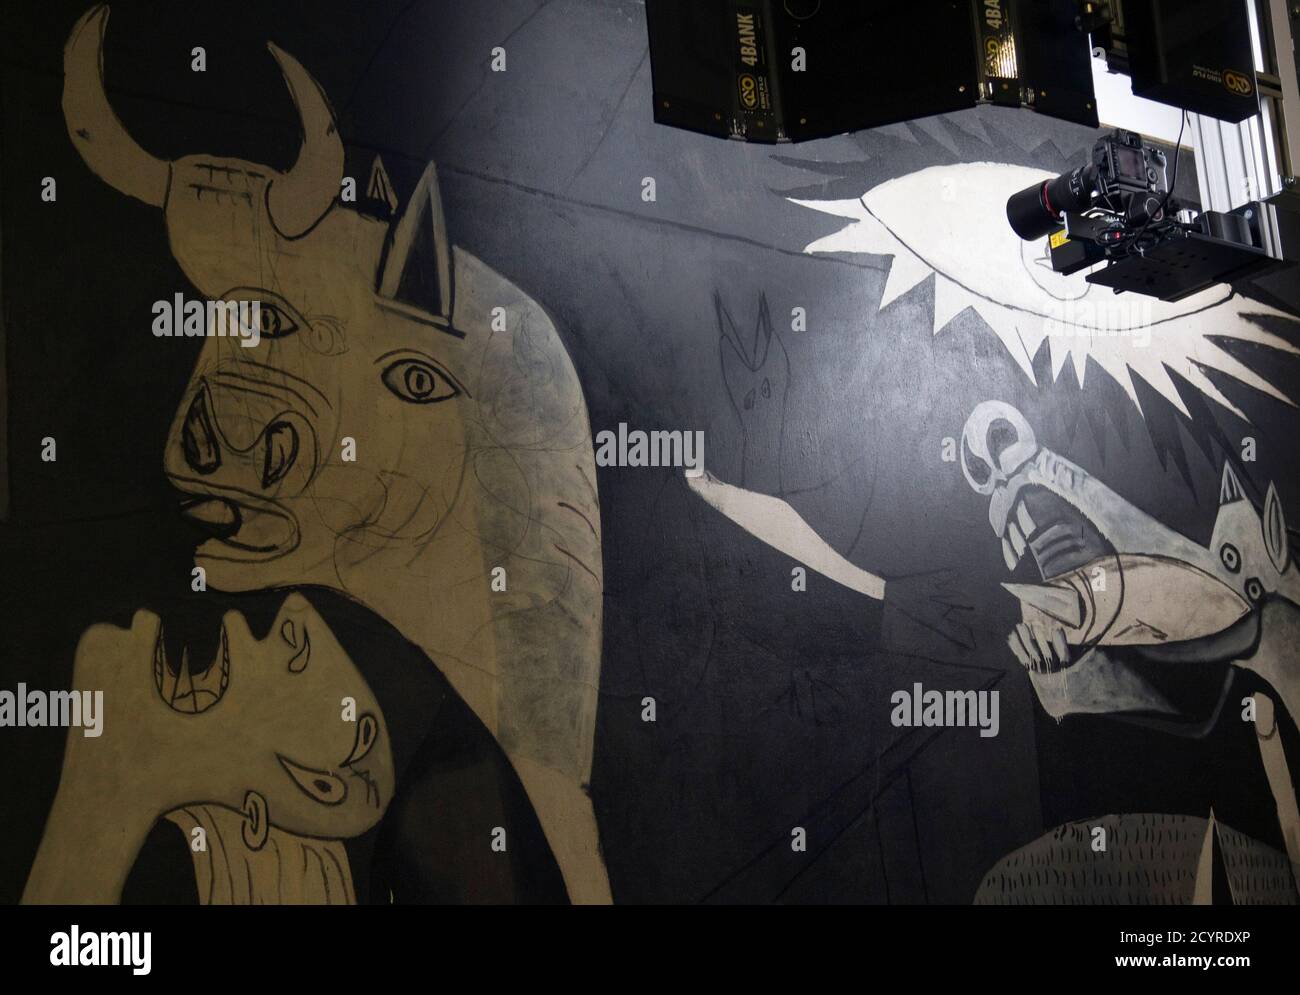 Eine Kamera auf einer mobilen roboterähnlichen Struktur bewegt sich über Pablo Picassos 'Guernica' Gemälde im Reina Sofia Museum in Madrid 28. Februar 2012. Experten sorgen sich schon lange um die Gesundheit von Picassos 'Guernica', einem der ikonischsten Gemälde der Welt, das aber nach einem hektischen Leben als äußerst empfindlich diagnostiziert wird. Eine mobile, roboterartige Struktur, die fortschrittliche Infrarot- und Ultraviolettfotografietechnologie verwendet, nimmt Tausende von mikroskopischen Aufnahmen des Gemäldes auf, um Analysten zu ermöglichen, das Werk wie nie zuvor zu durchdringen und seinen wahren Zustand zu sehen. Der Mechanismus hat sein Stockfoto